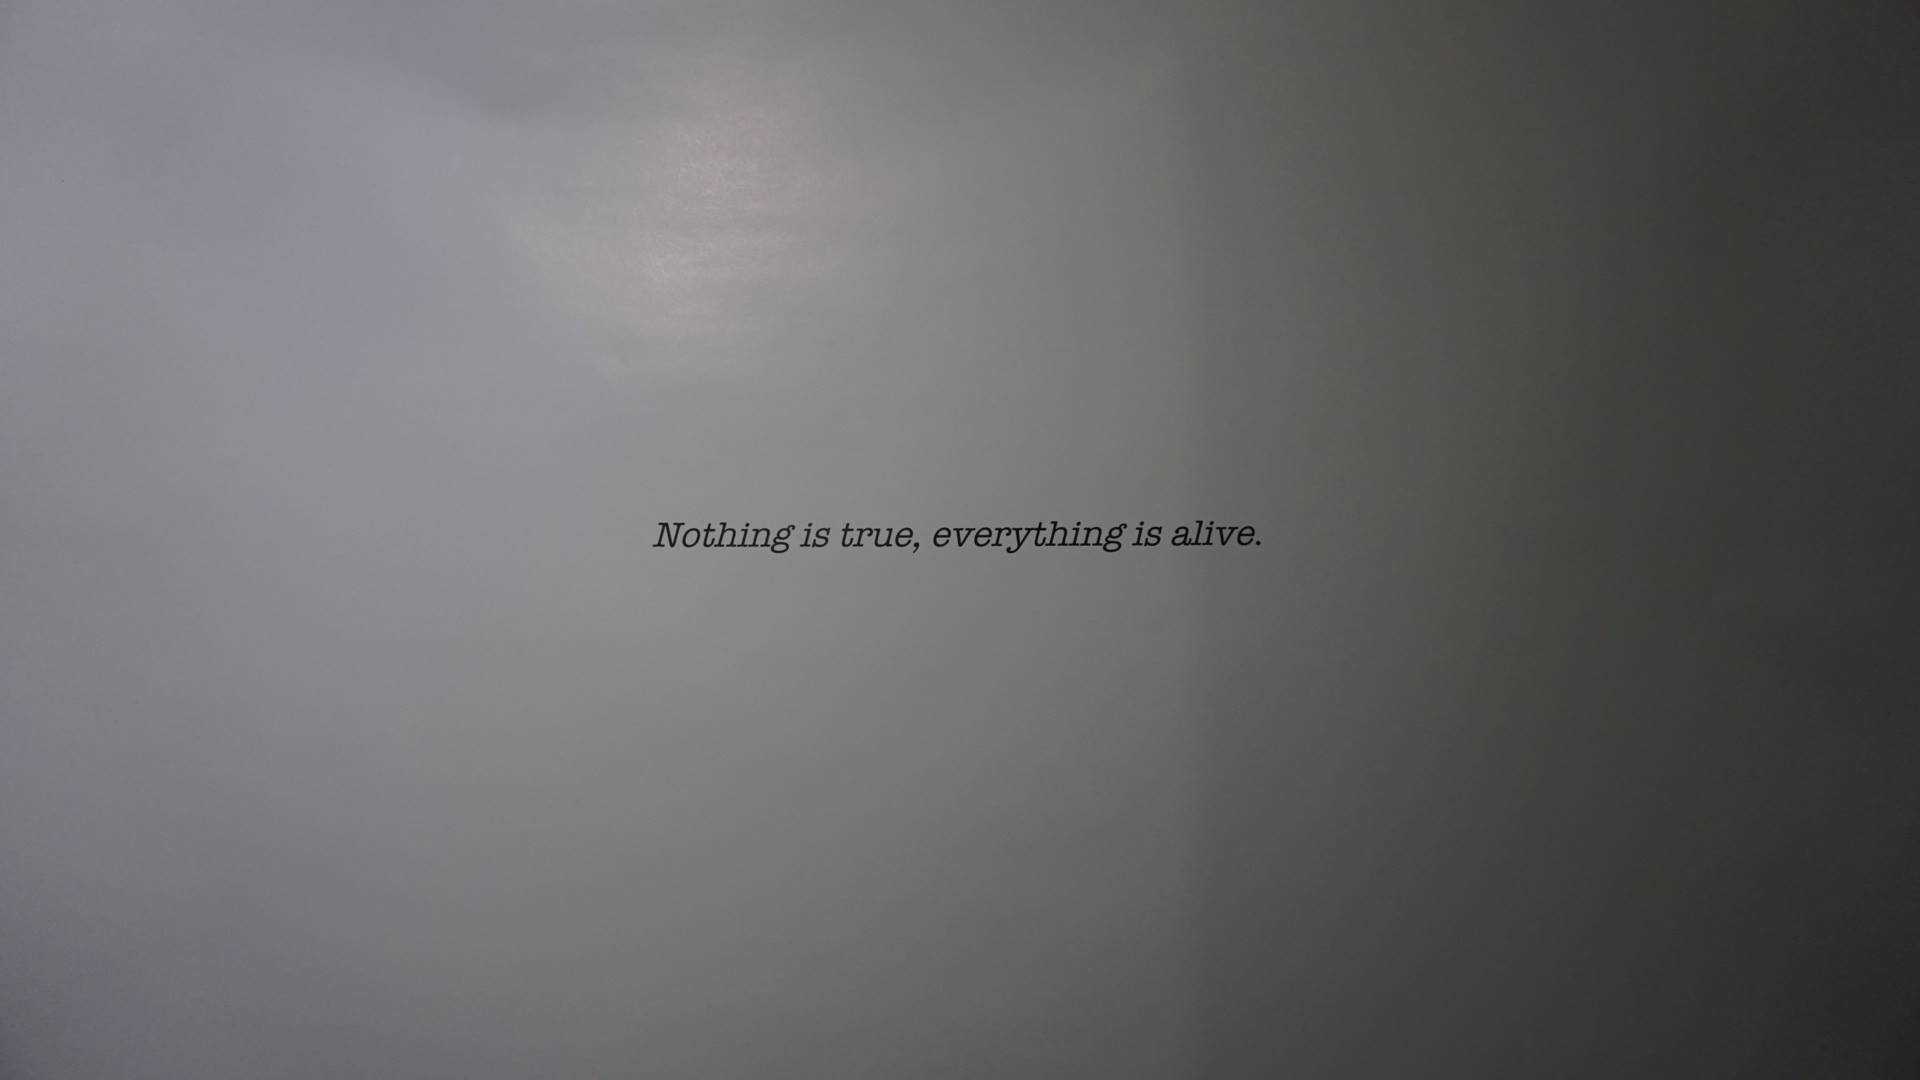 "Rien n’est vrai, tout est vivant" by Edouard Glissant